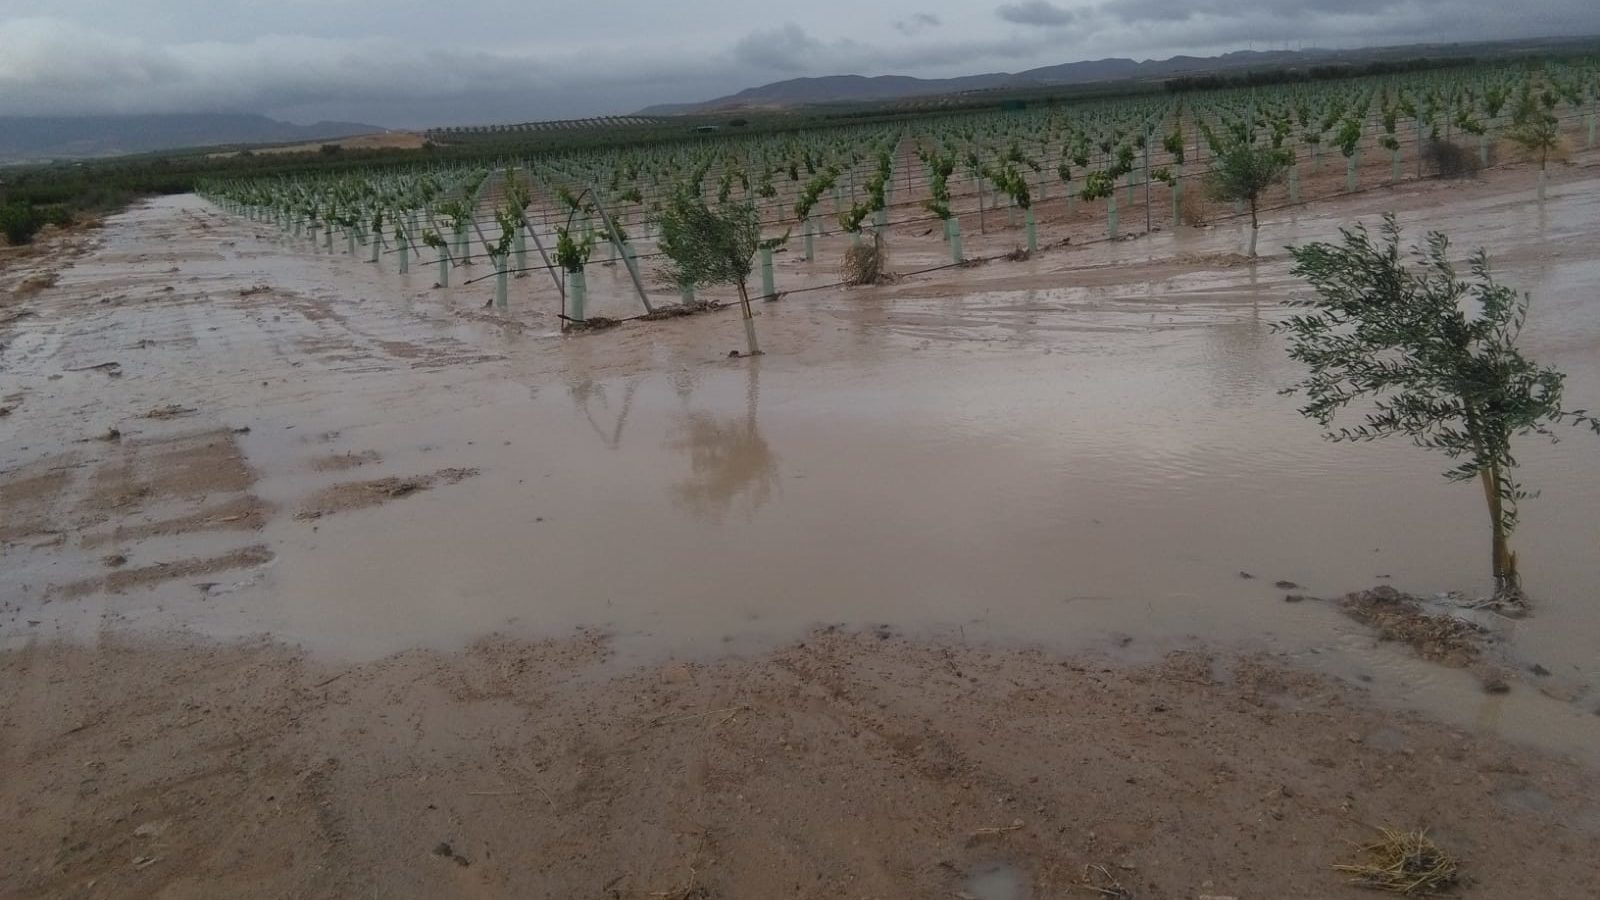 Los agricultores reciben las últimas lluvias como “agua bendita”